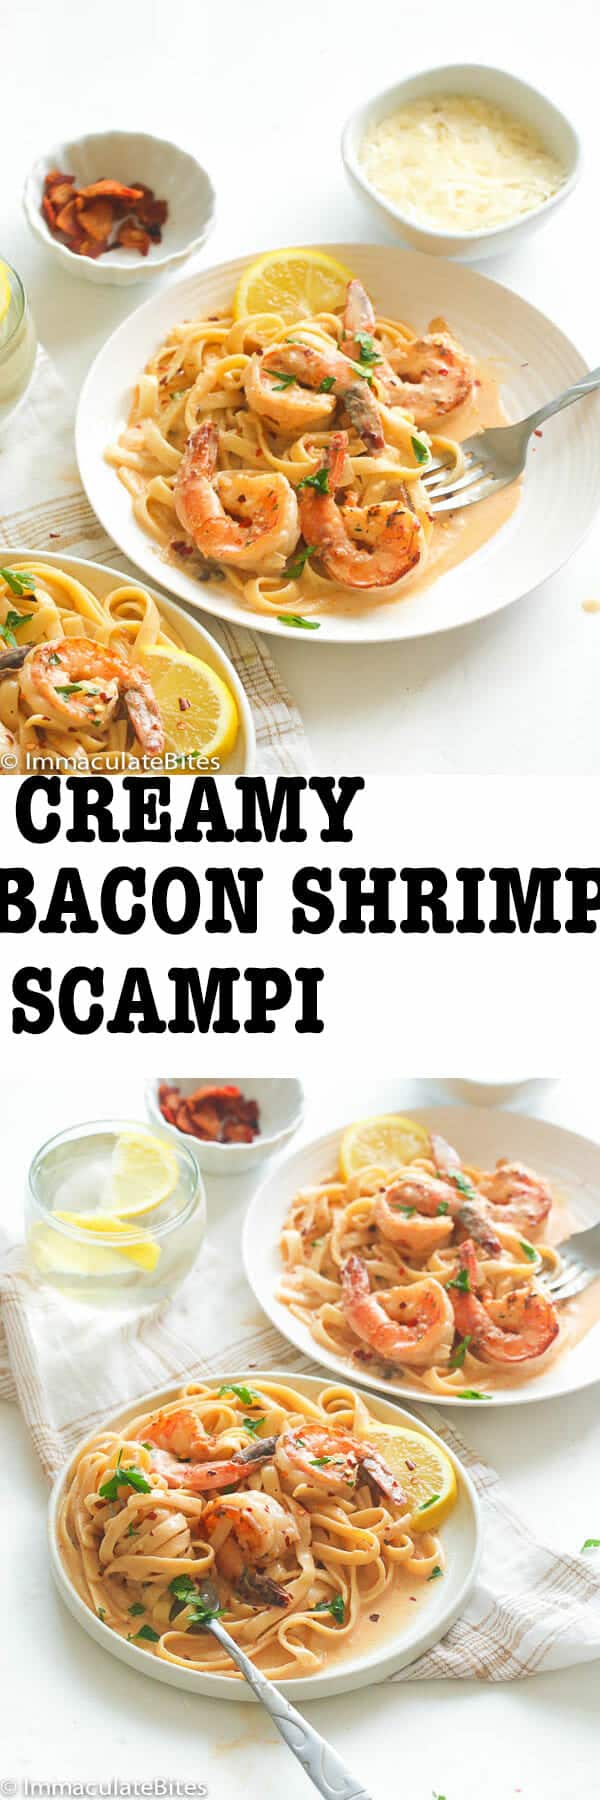 Creamy Bacon Shrimp Scampi